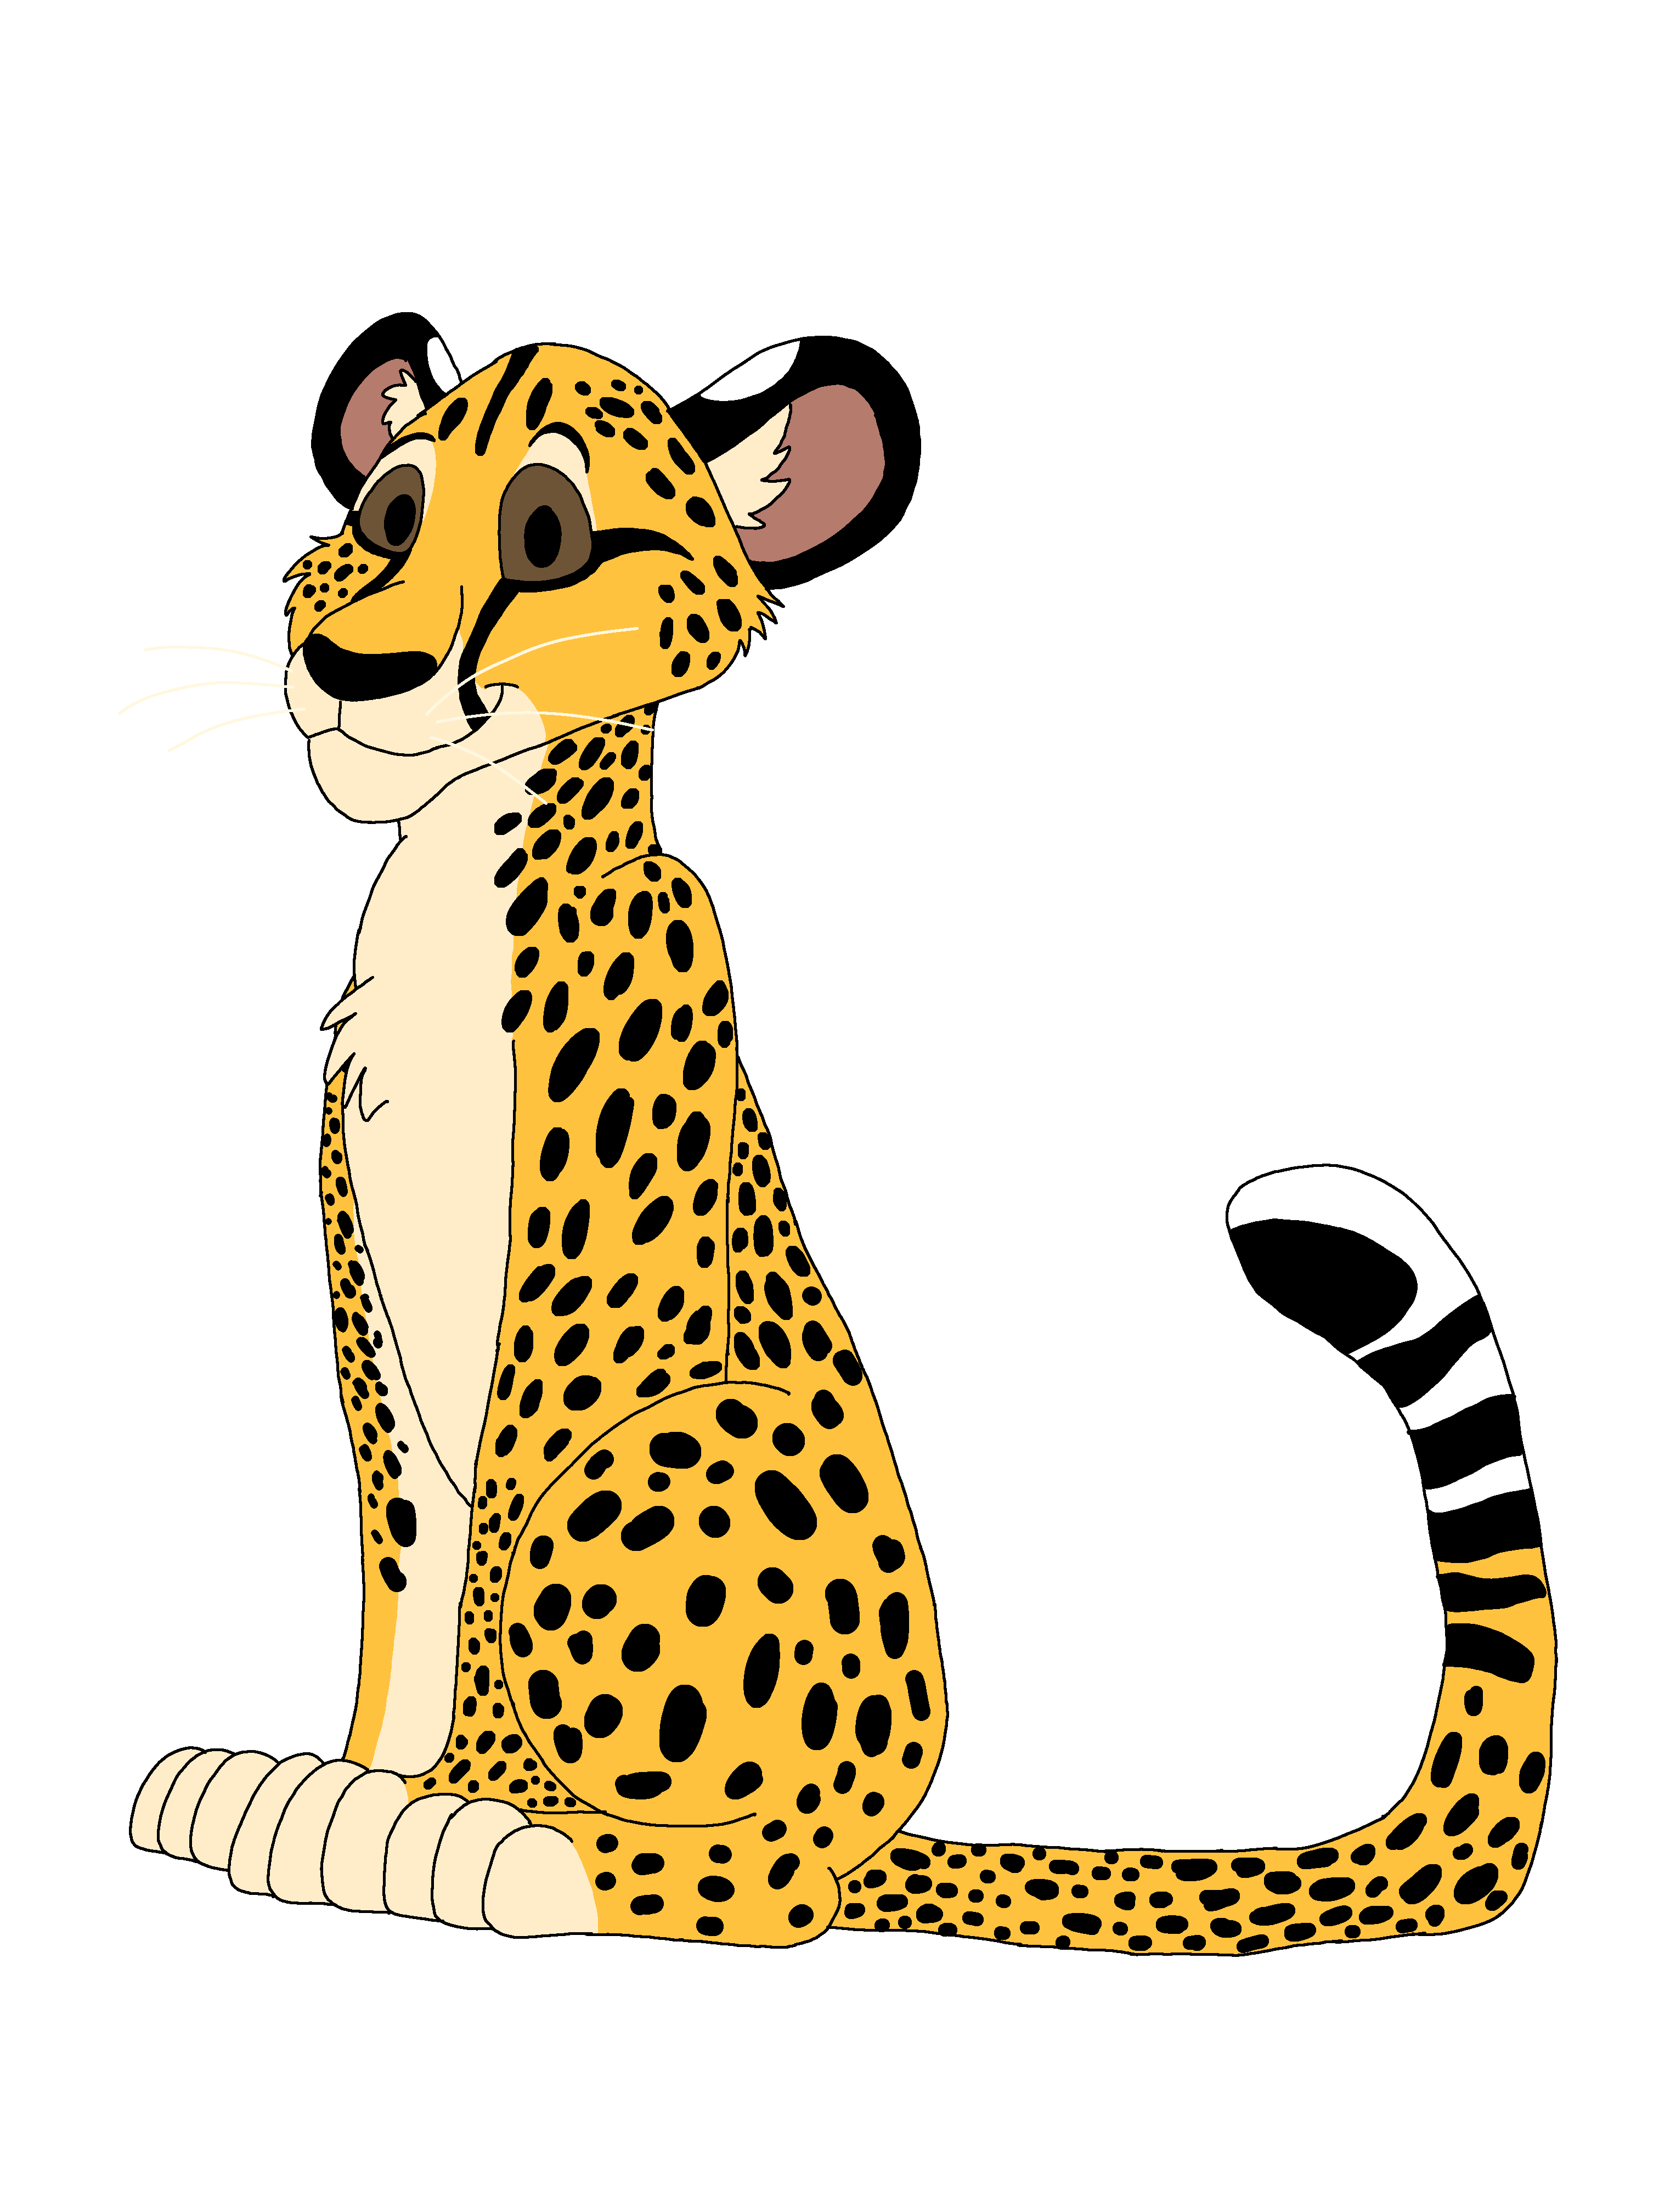 lion king 4 cheetah adventure